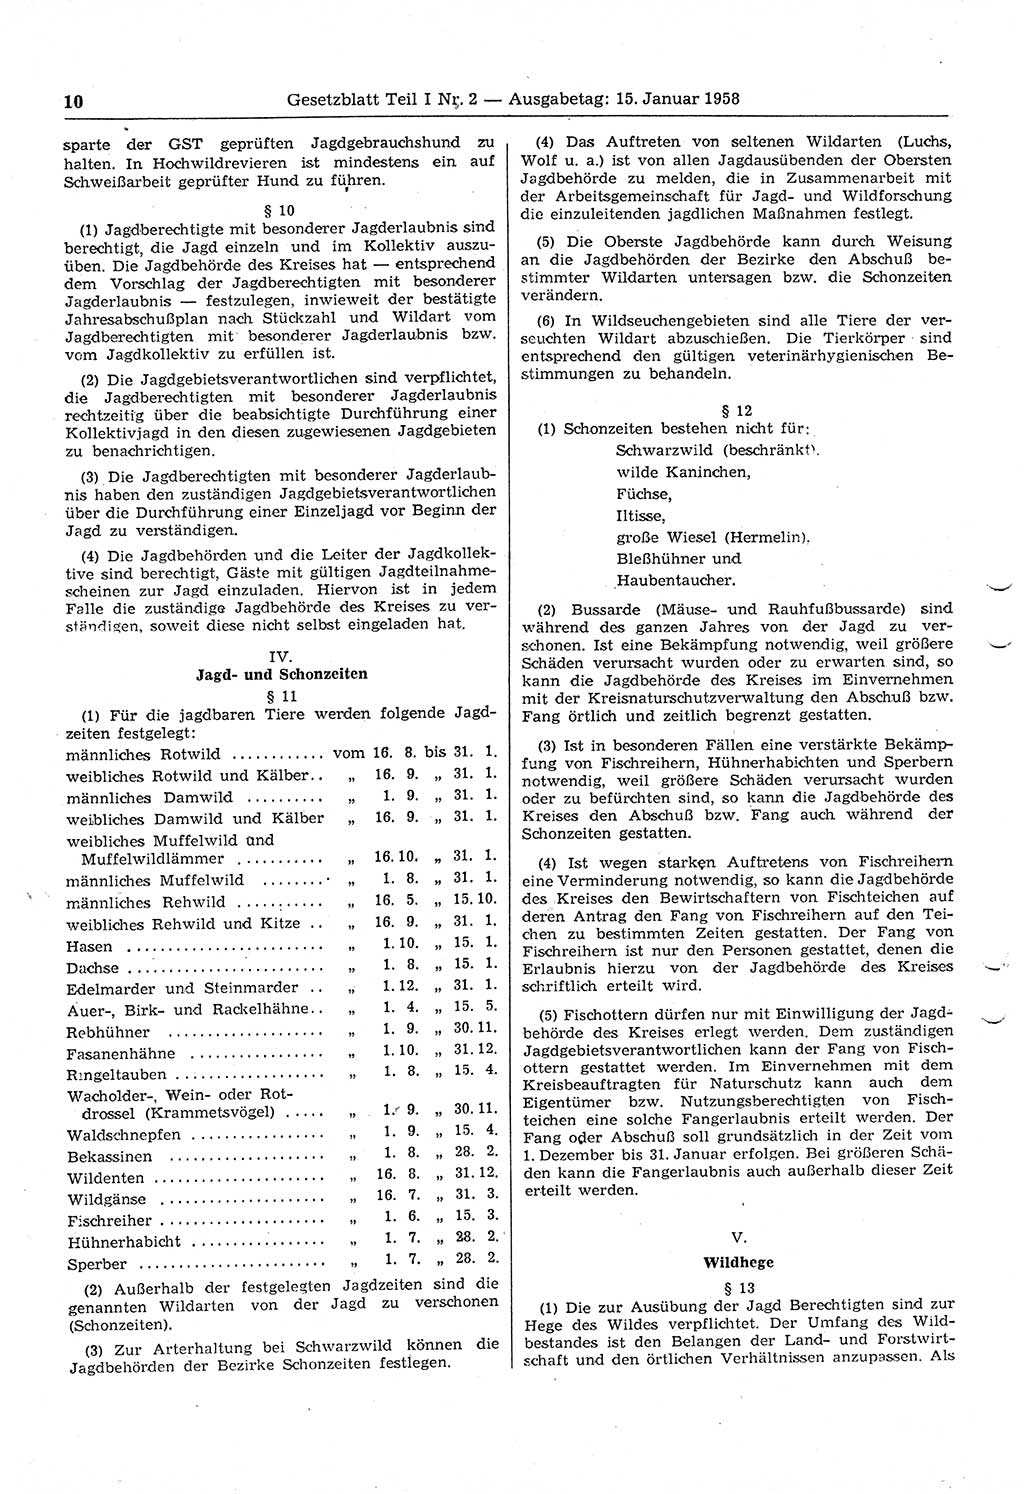 Gesetzblatt (GBl.) der Deutschen Demokratischen Republik (DDR) Teil Ⅰ 1958, Seite 10 (GBl. DDR Ⅰ 1958, S. 10)